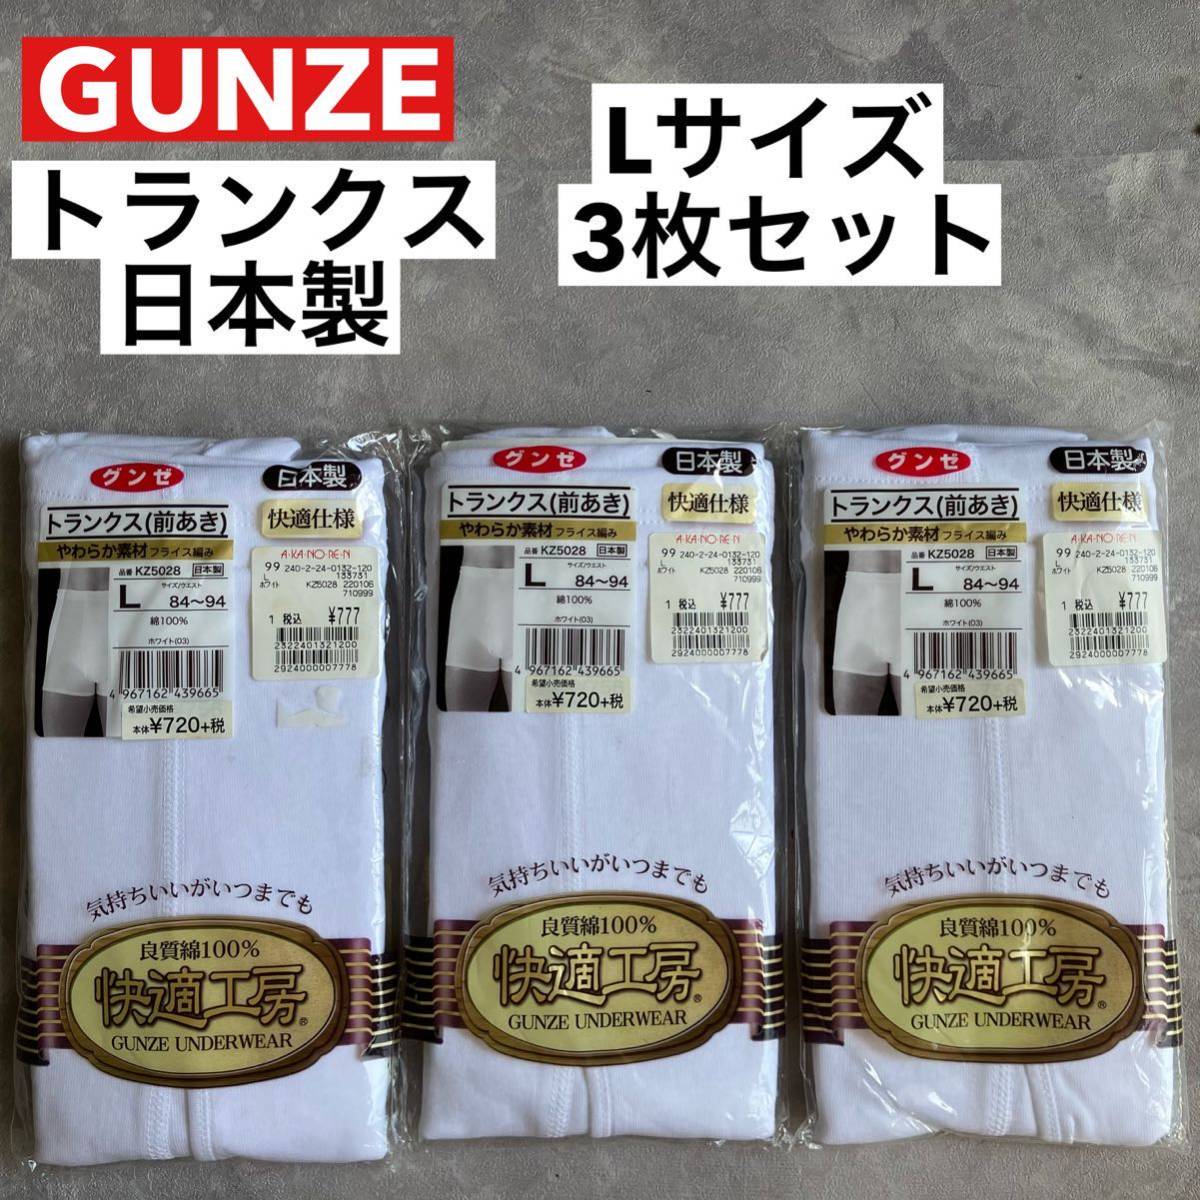 即決 未使用品 グンゼ GUNZE トランクス(前あき) Lサイズ 3枚セット 日本製 快適仕様 やわらか素材 ホワイト 白 綿100% ウエスト84〜94_画像1